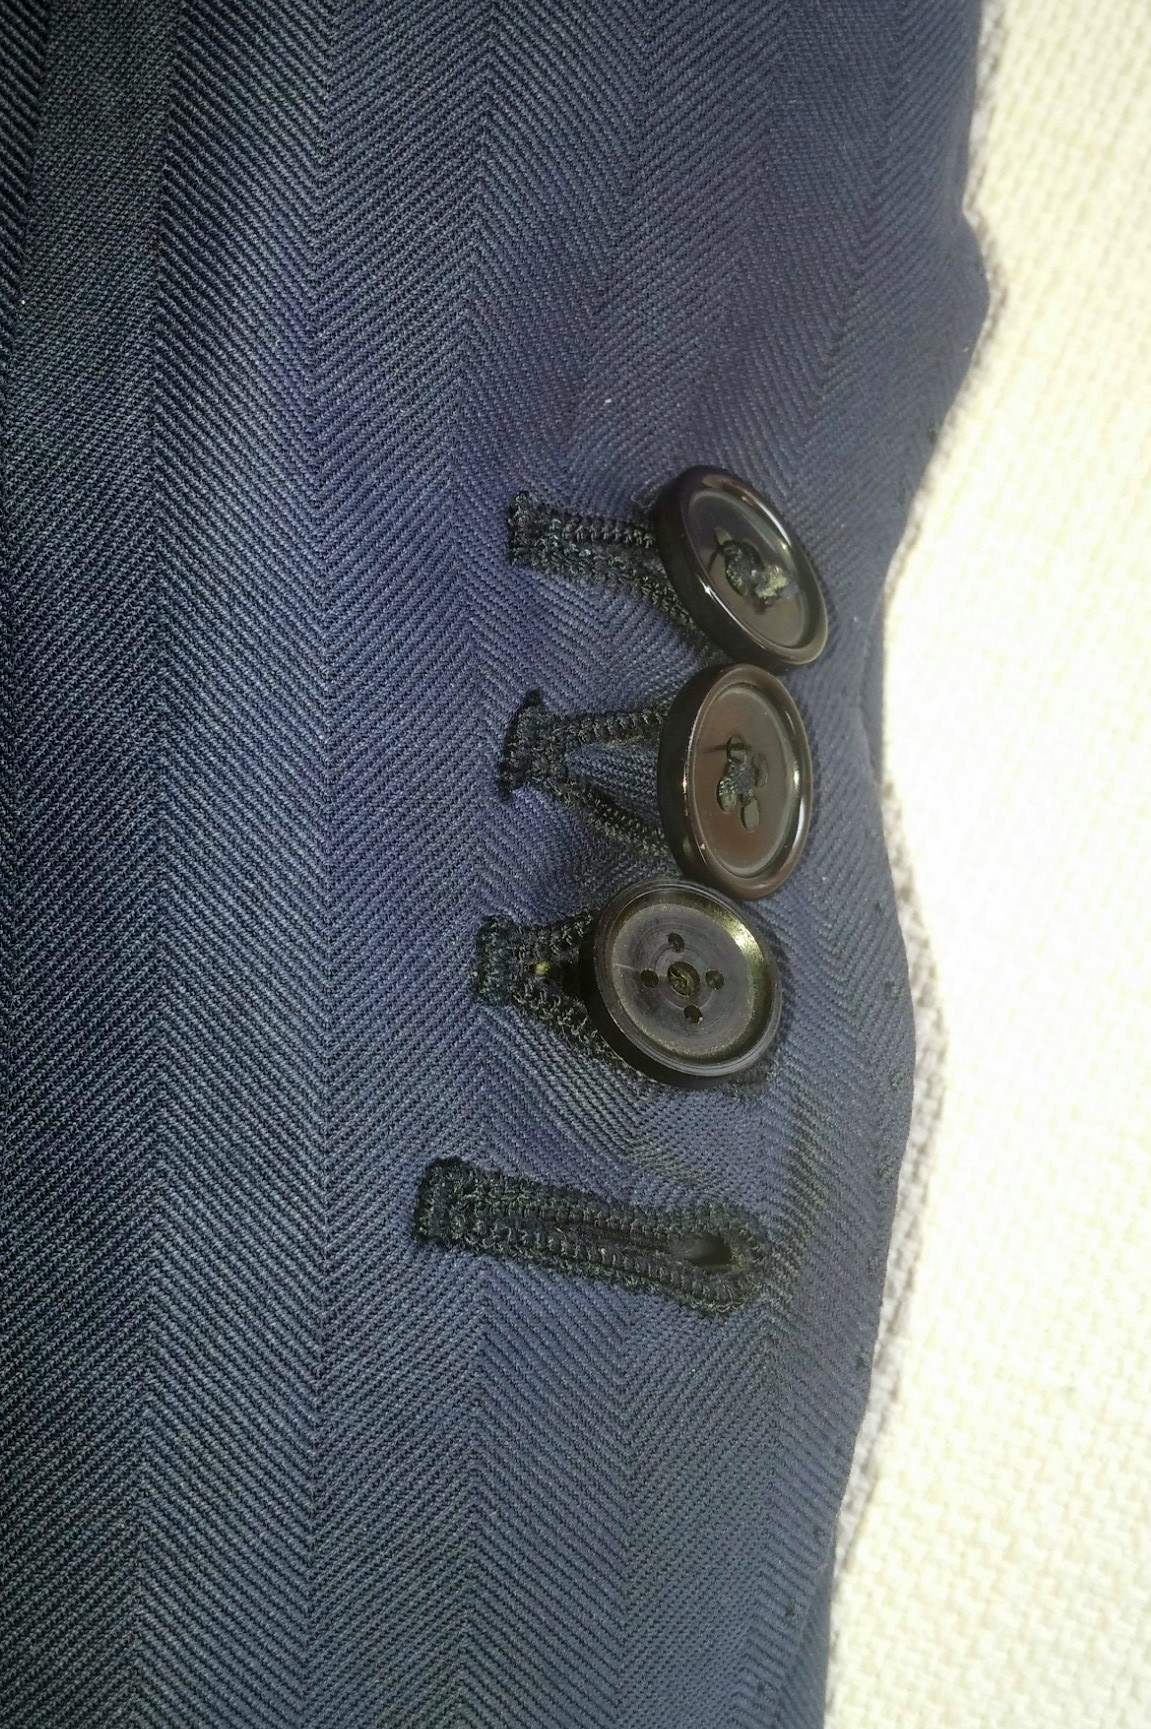 In questa immagine si vede il polsino di una giacca con tre bottoni, uno di essi e' un finto bottone dove e' nascosta una minuscola telecamera per spiare o registrare di nascosto